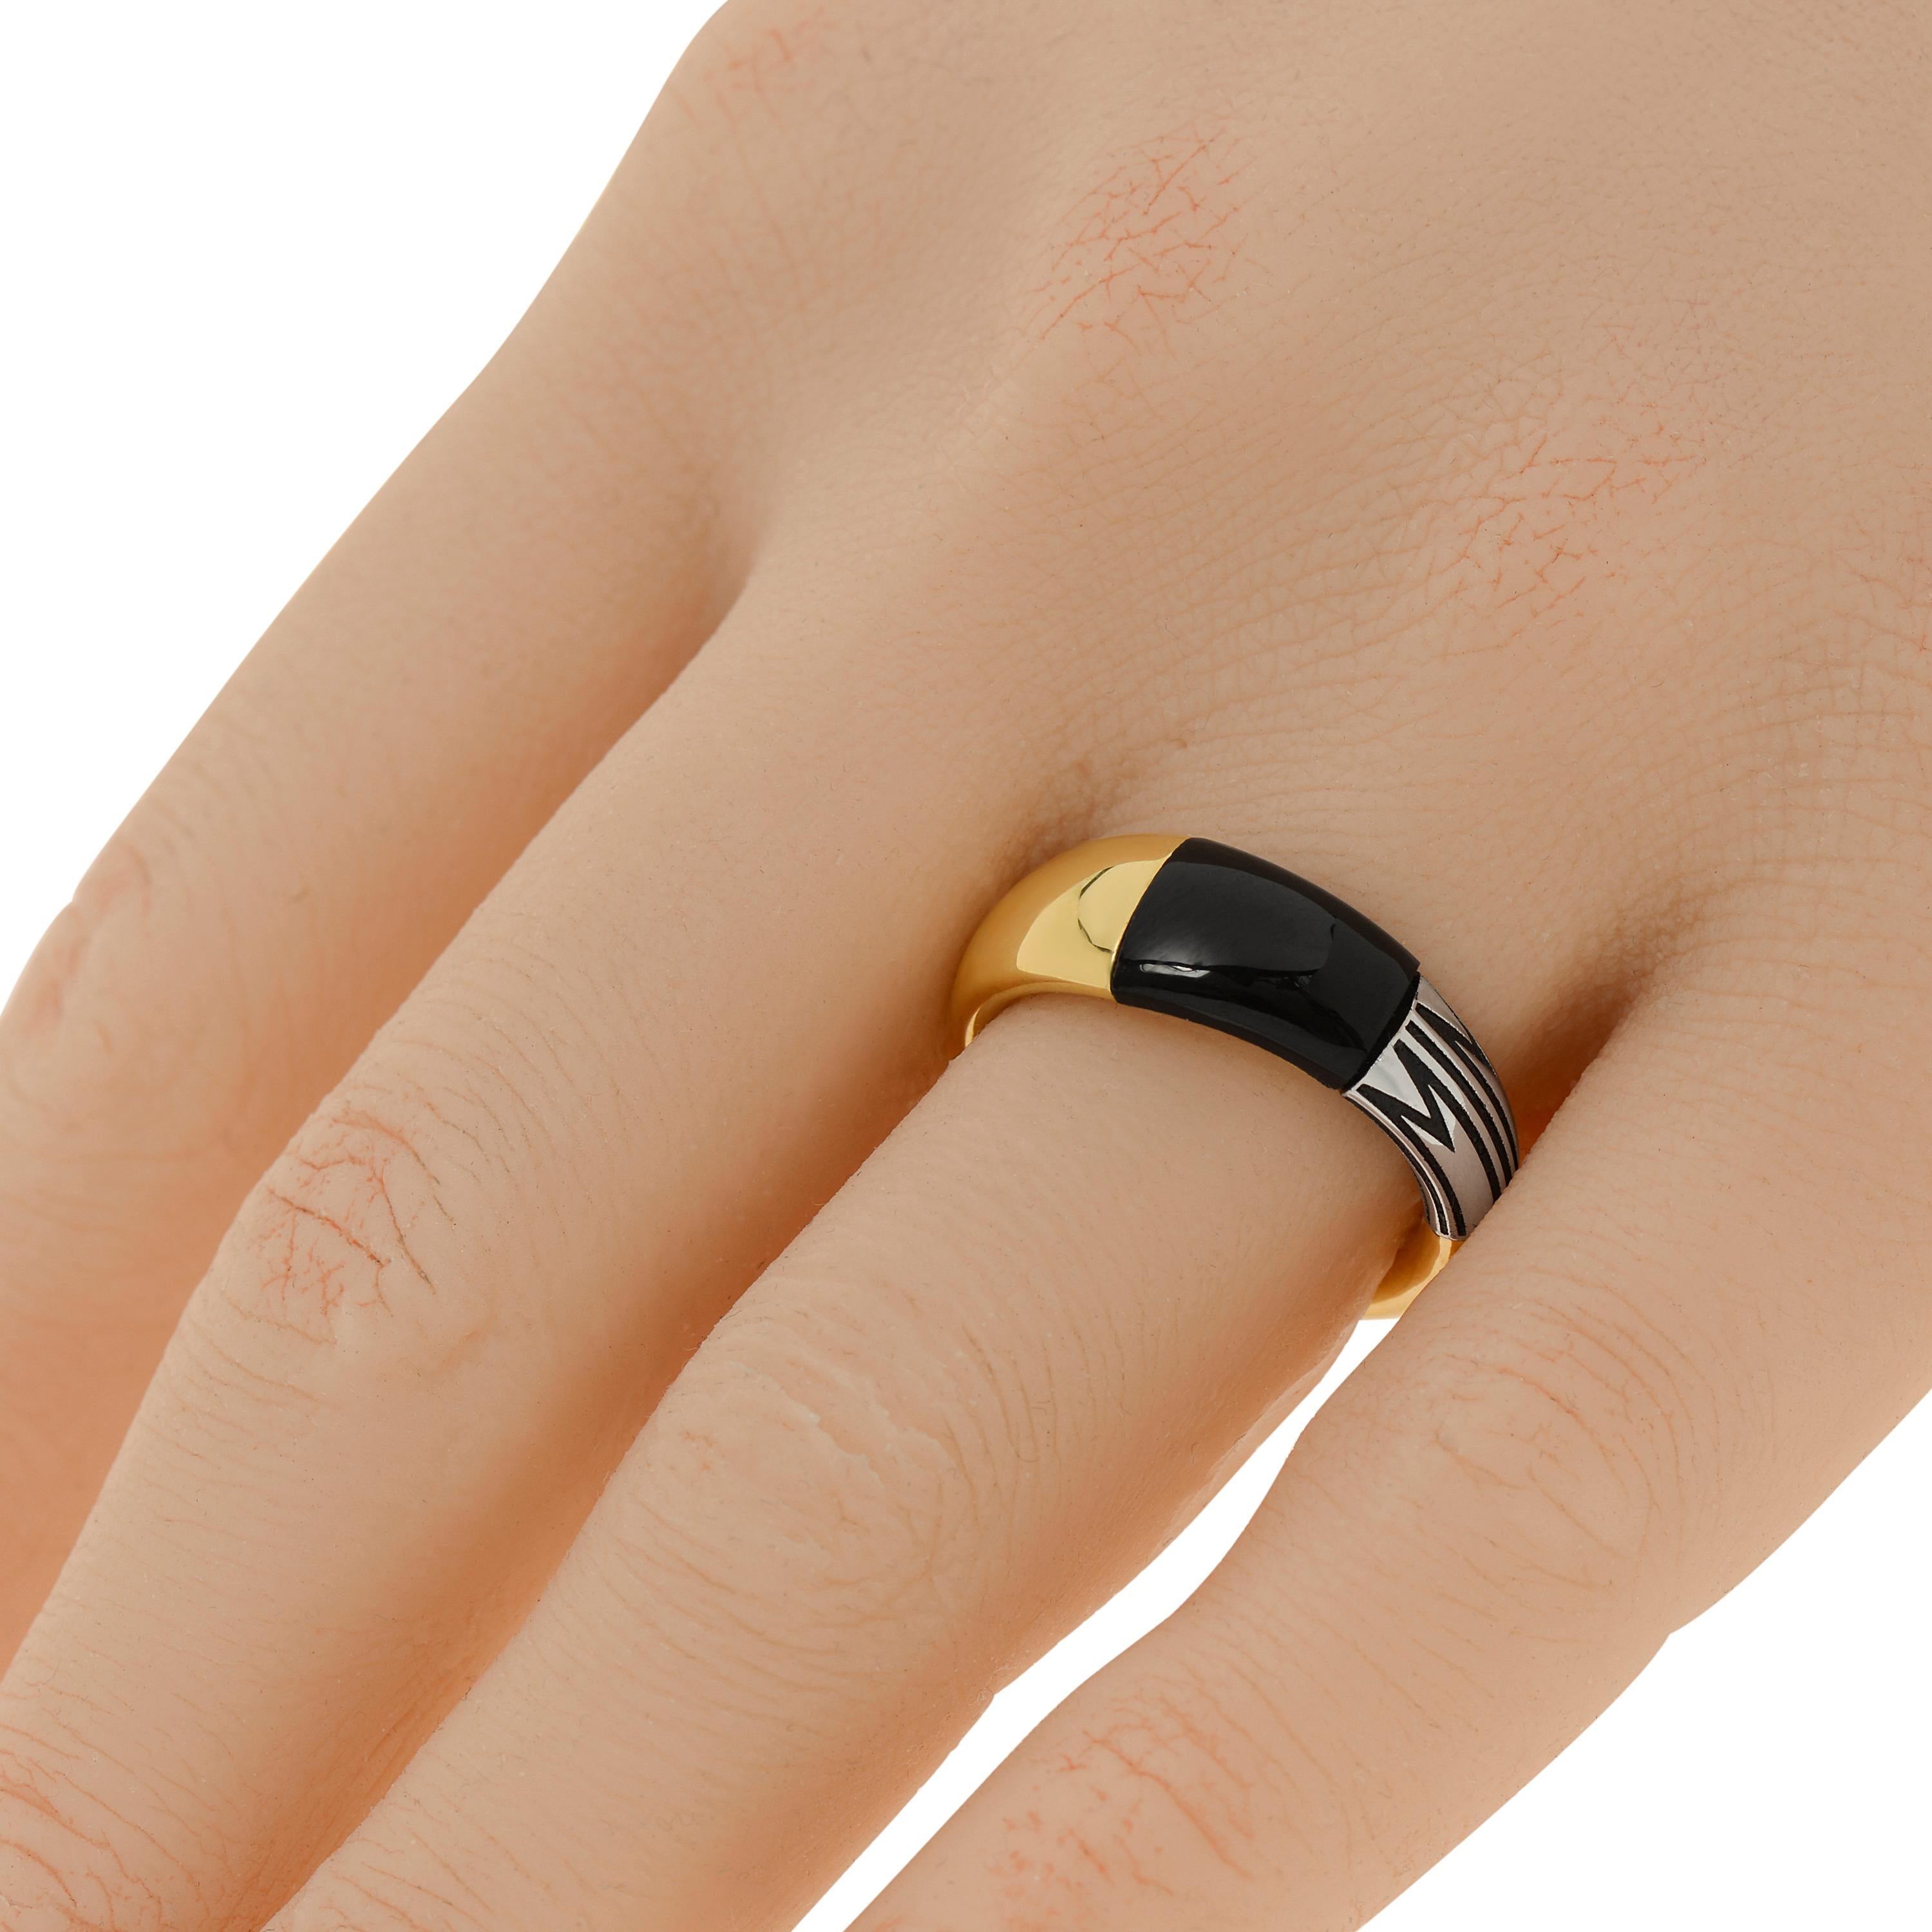 Der Ring Mimi Milano aus 18 Karat Gelbgold und 18 Karat Weißgold ist eine elegante Kombination aus zweifarbigem 18 Karat Gold und Onyx. Die Ringgröße ist 7 (54,4). Die Breite des Bandes beträgt 3,7 mm bis 7,7 mm. Das Gewicht beträgt 4,27 g.
